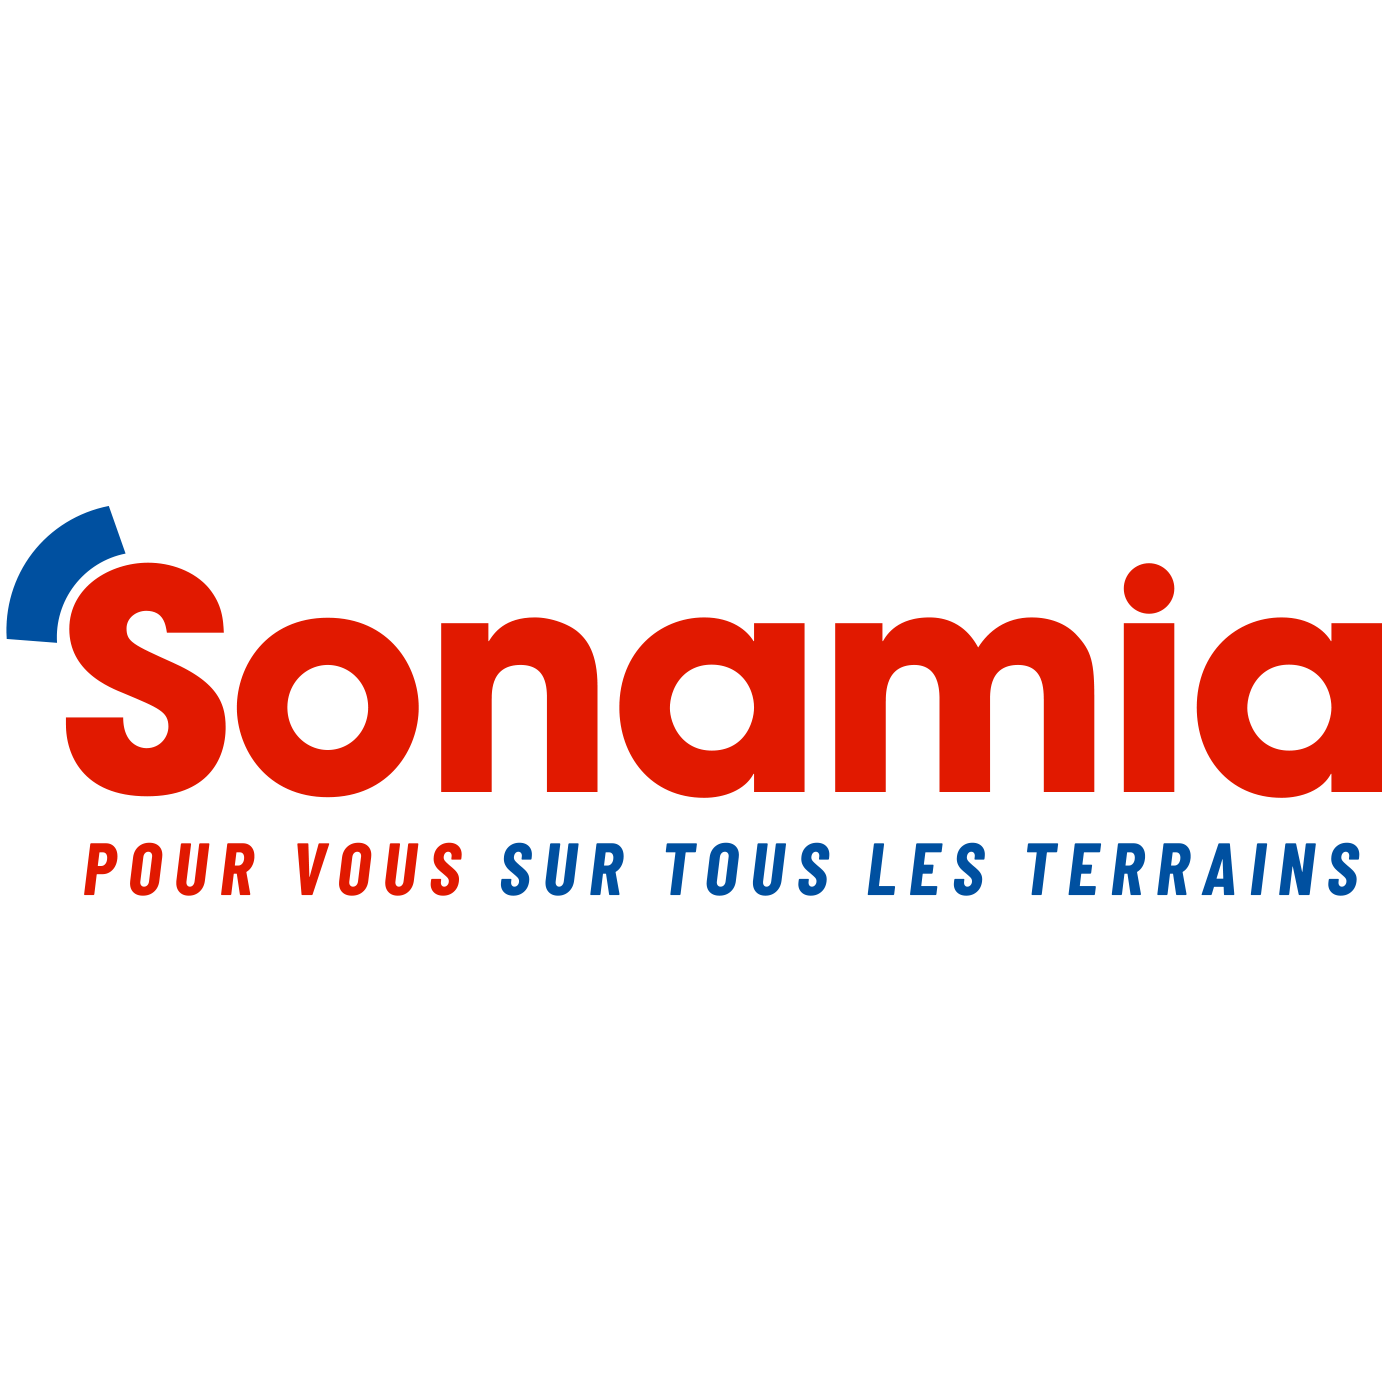 Sonamia